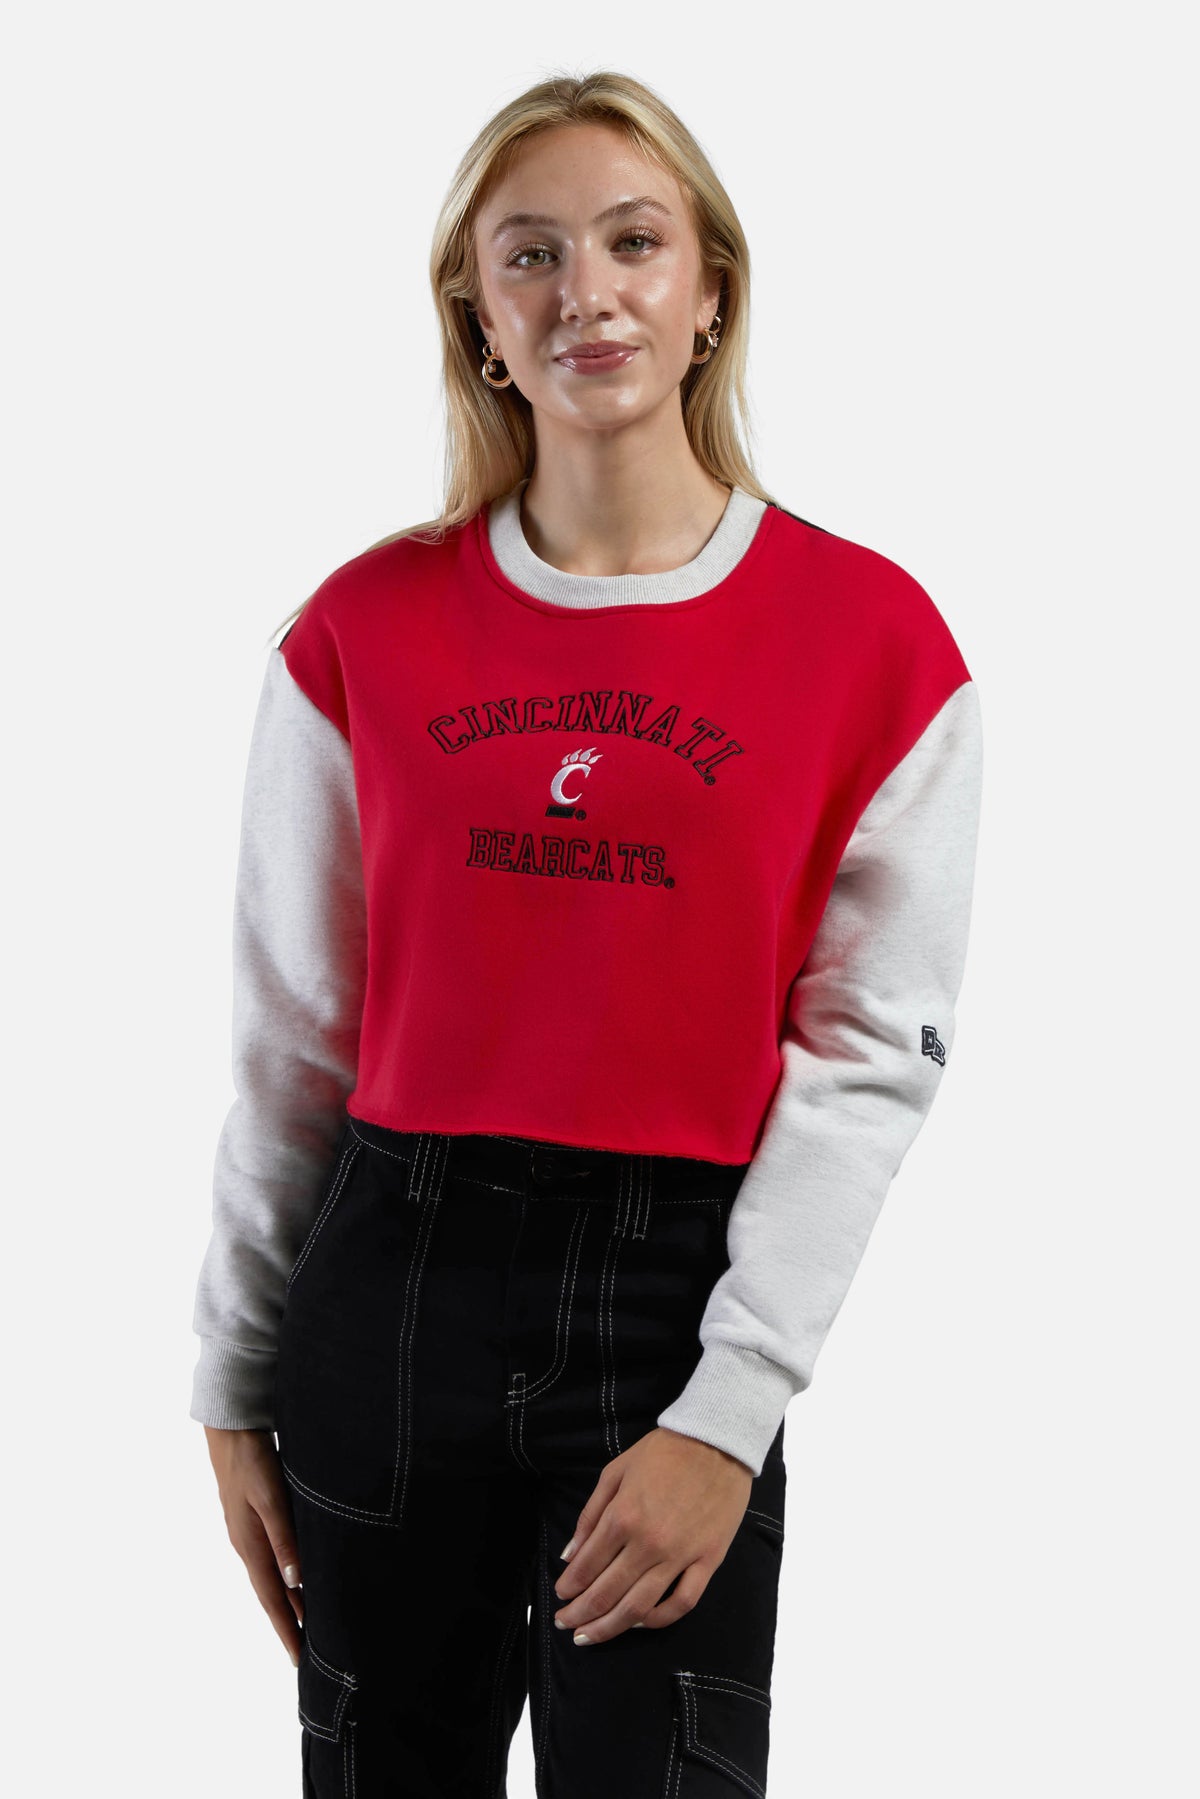 Cincinnati Rookie Sweater